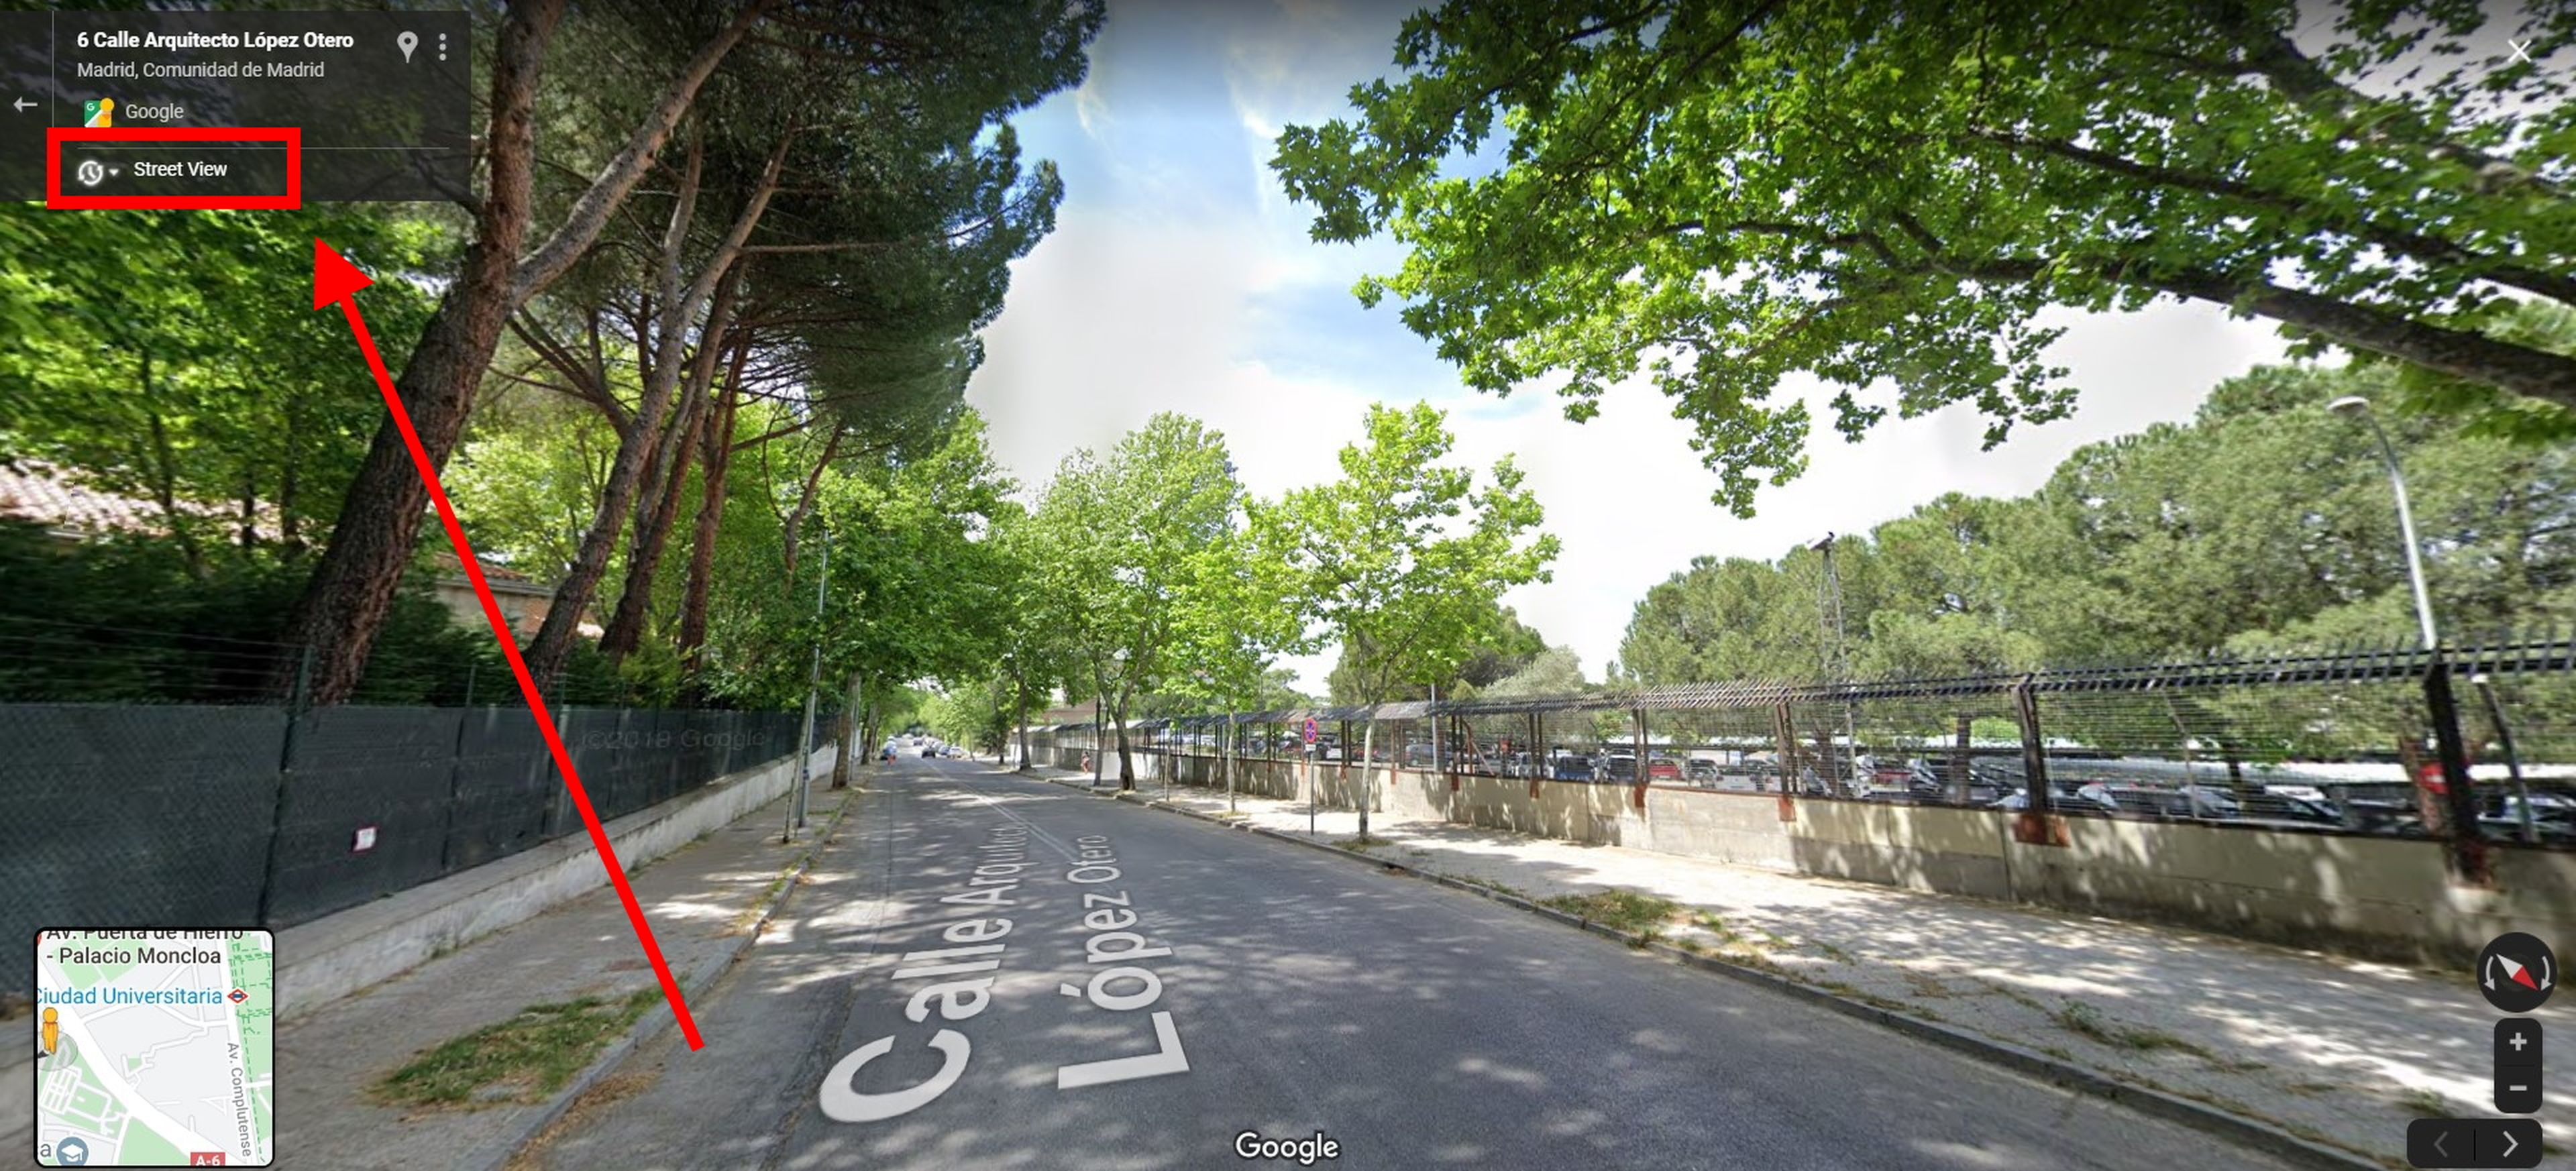 Utiliza street view para viajar en el tiempo y ver cómo era un lugar hace unos años en Google Maps